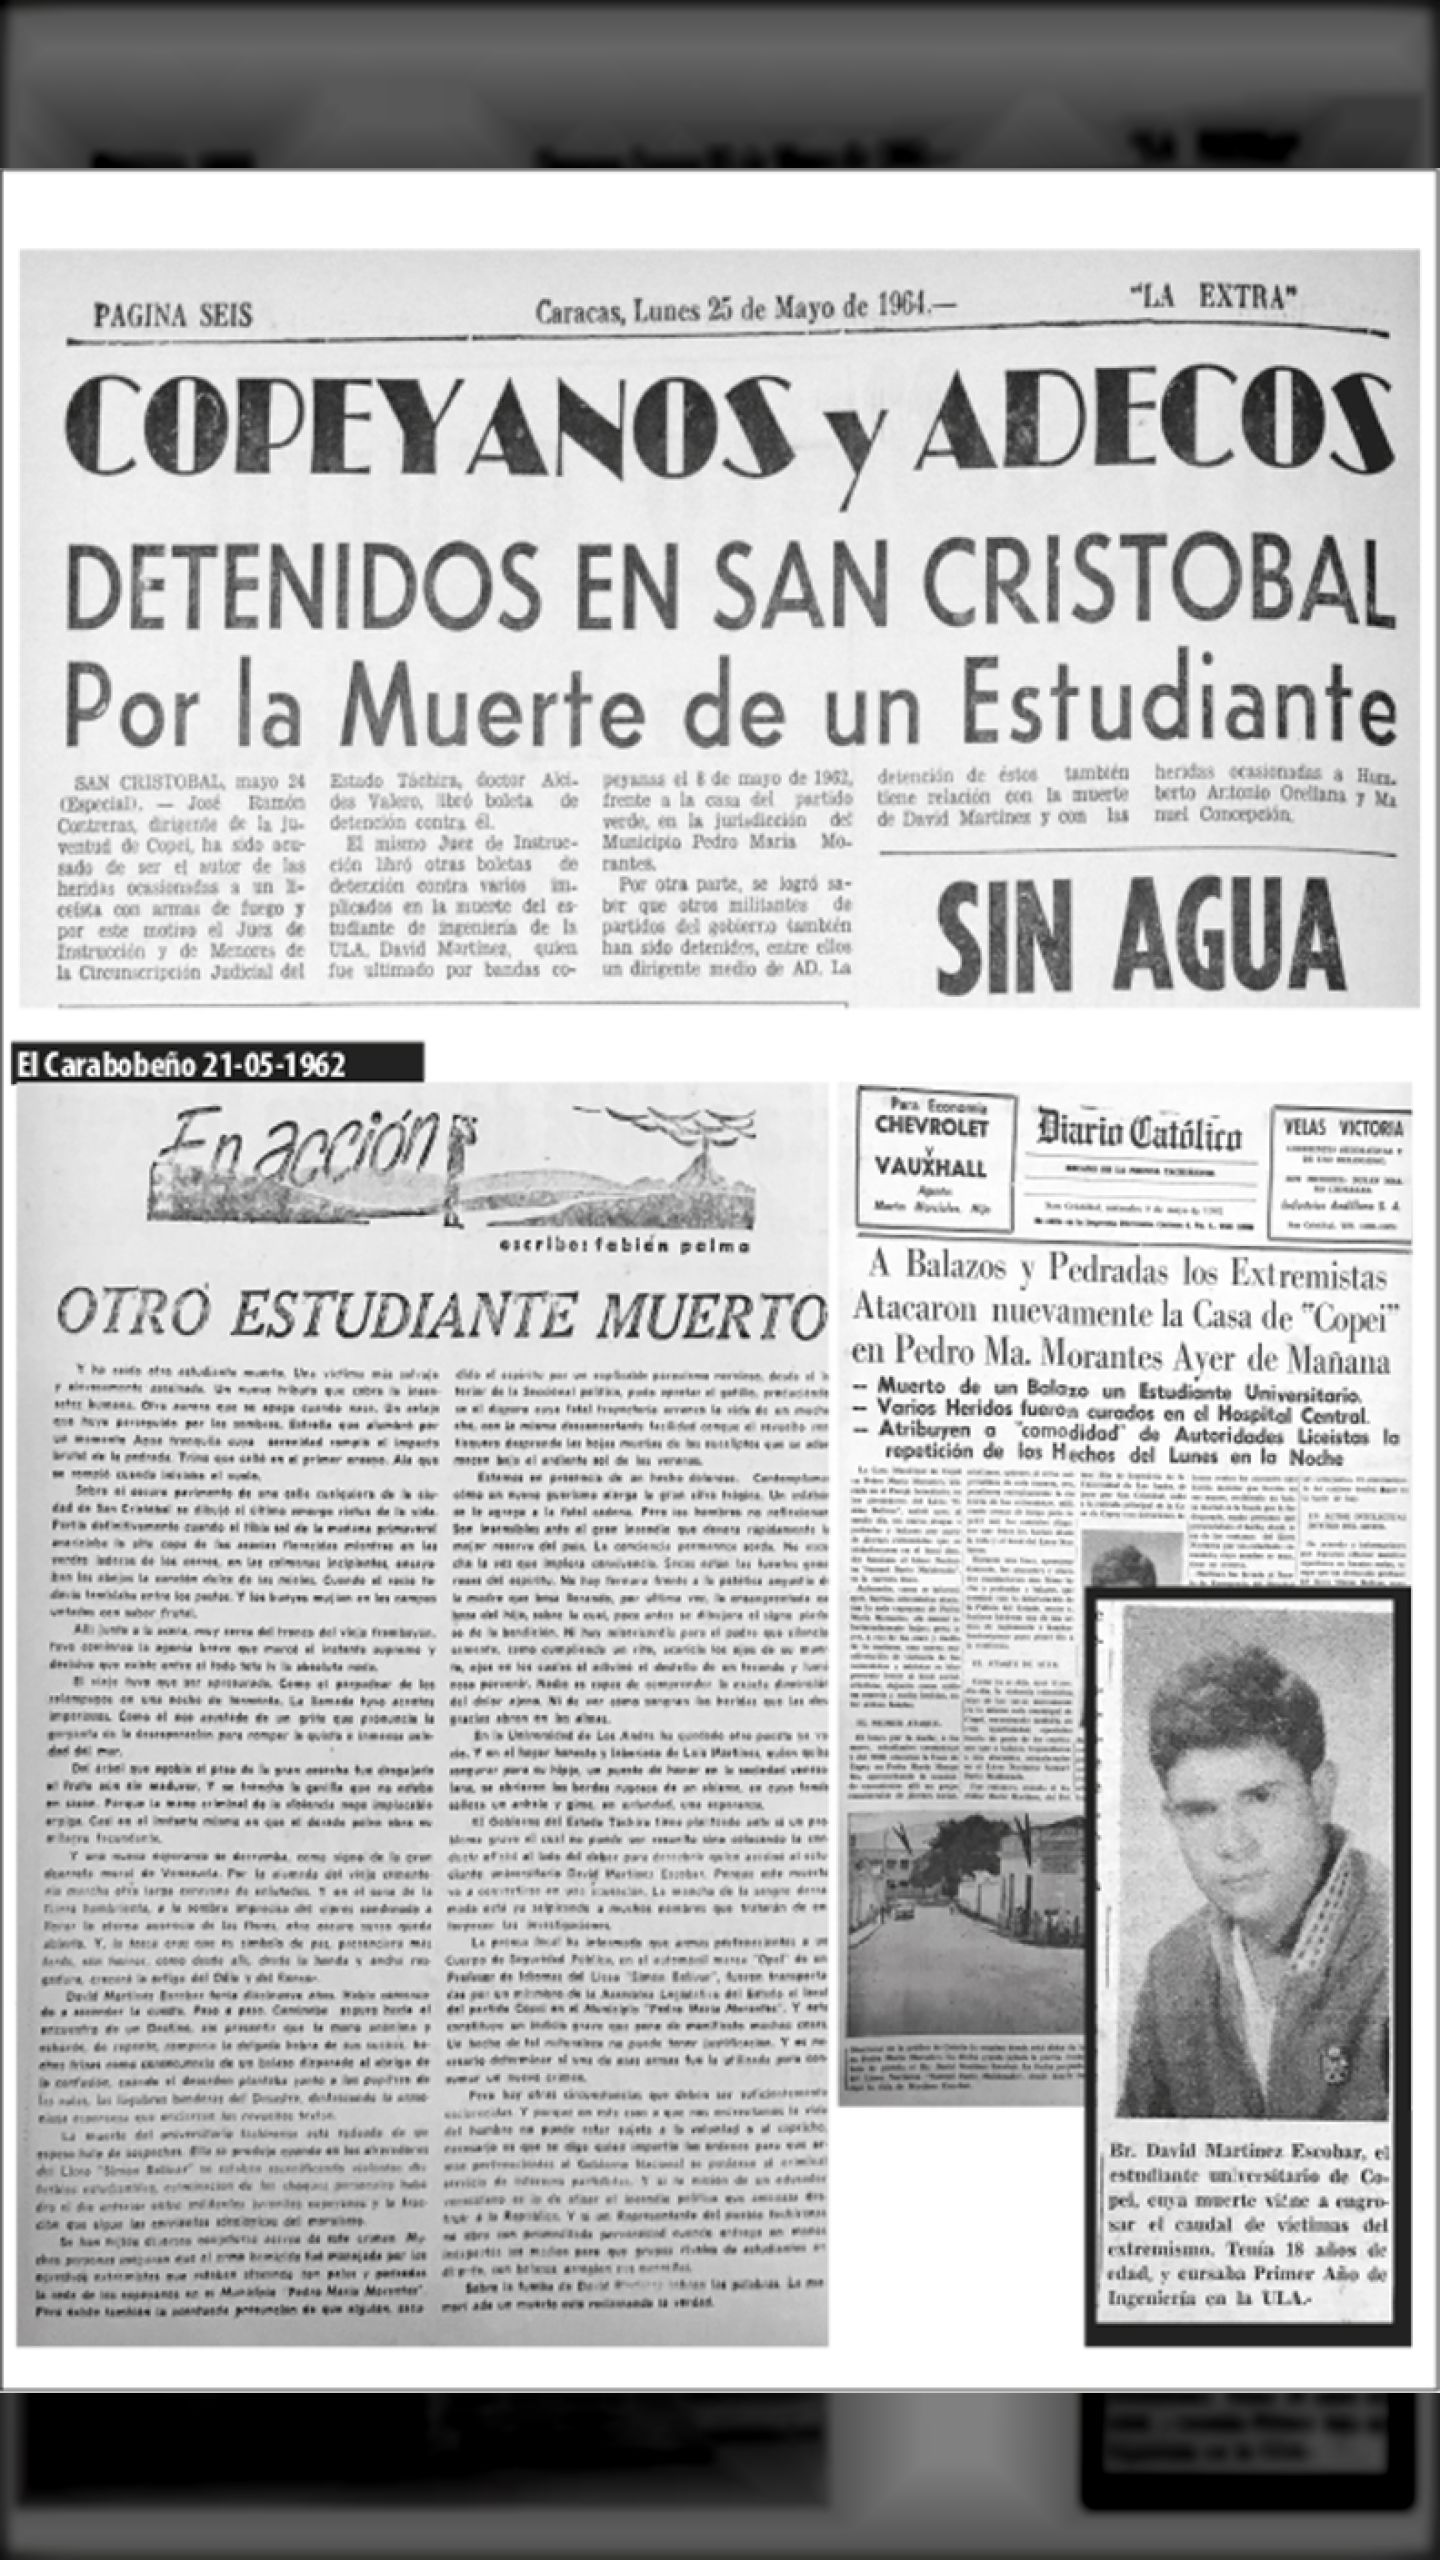 COPEYANOS Y ADECOS DETENIDOS EN SAN CRISTÓBAL POR LA MUERTE DE UN ESTUDIANTE (LA EXTRA, 25 de mayo 1964)